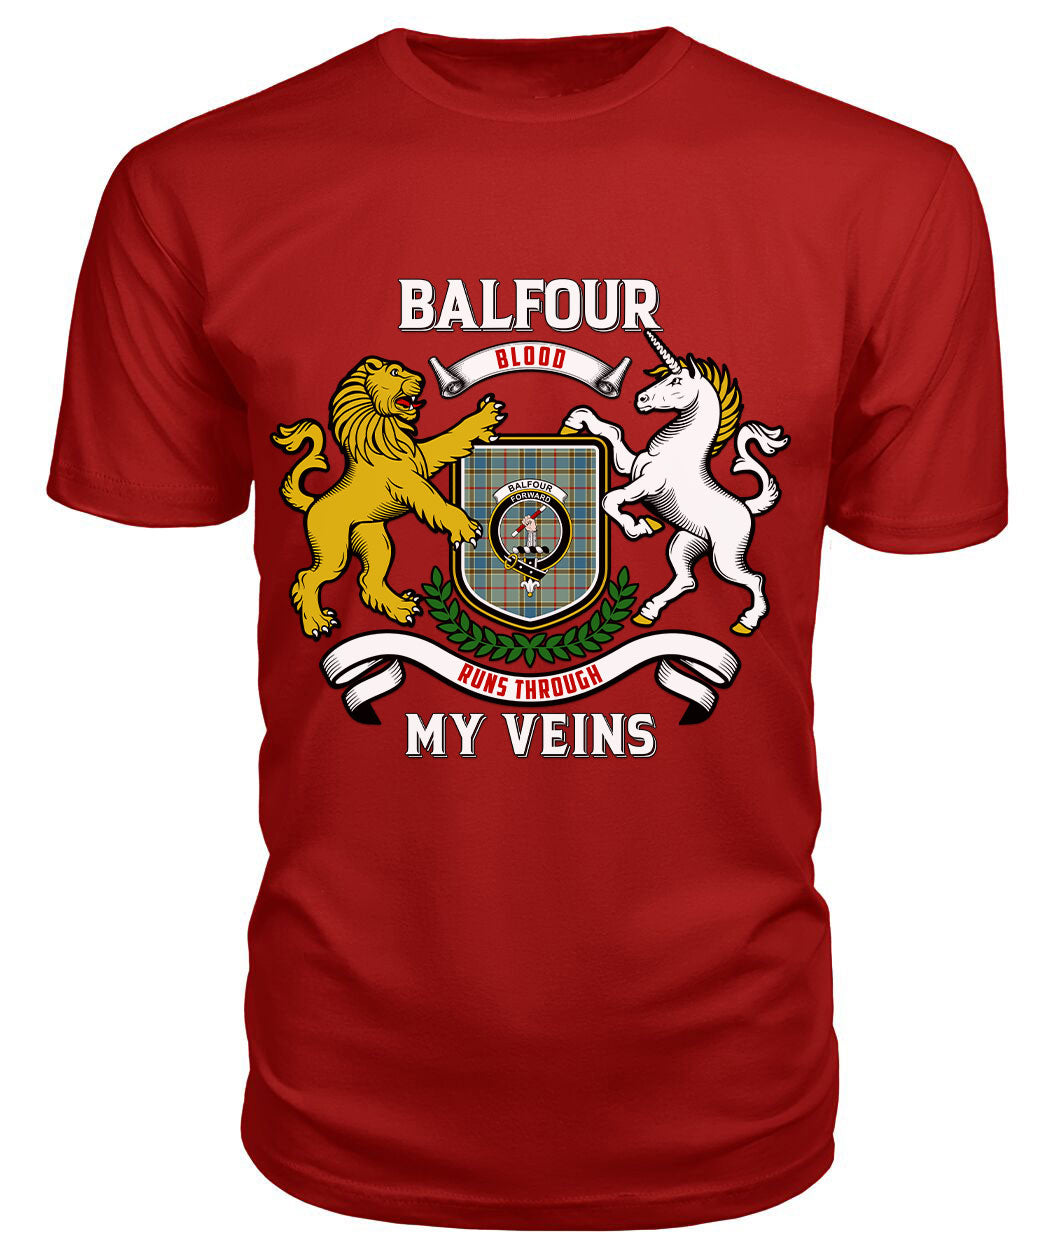 Balfour Blue Tartan Crest 2D T-shirt - Blood Runs Through My Veins Style